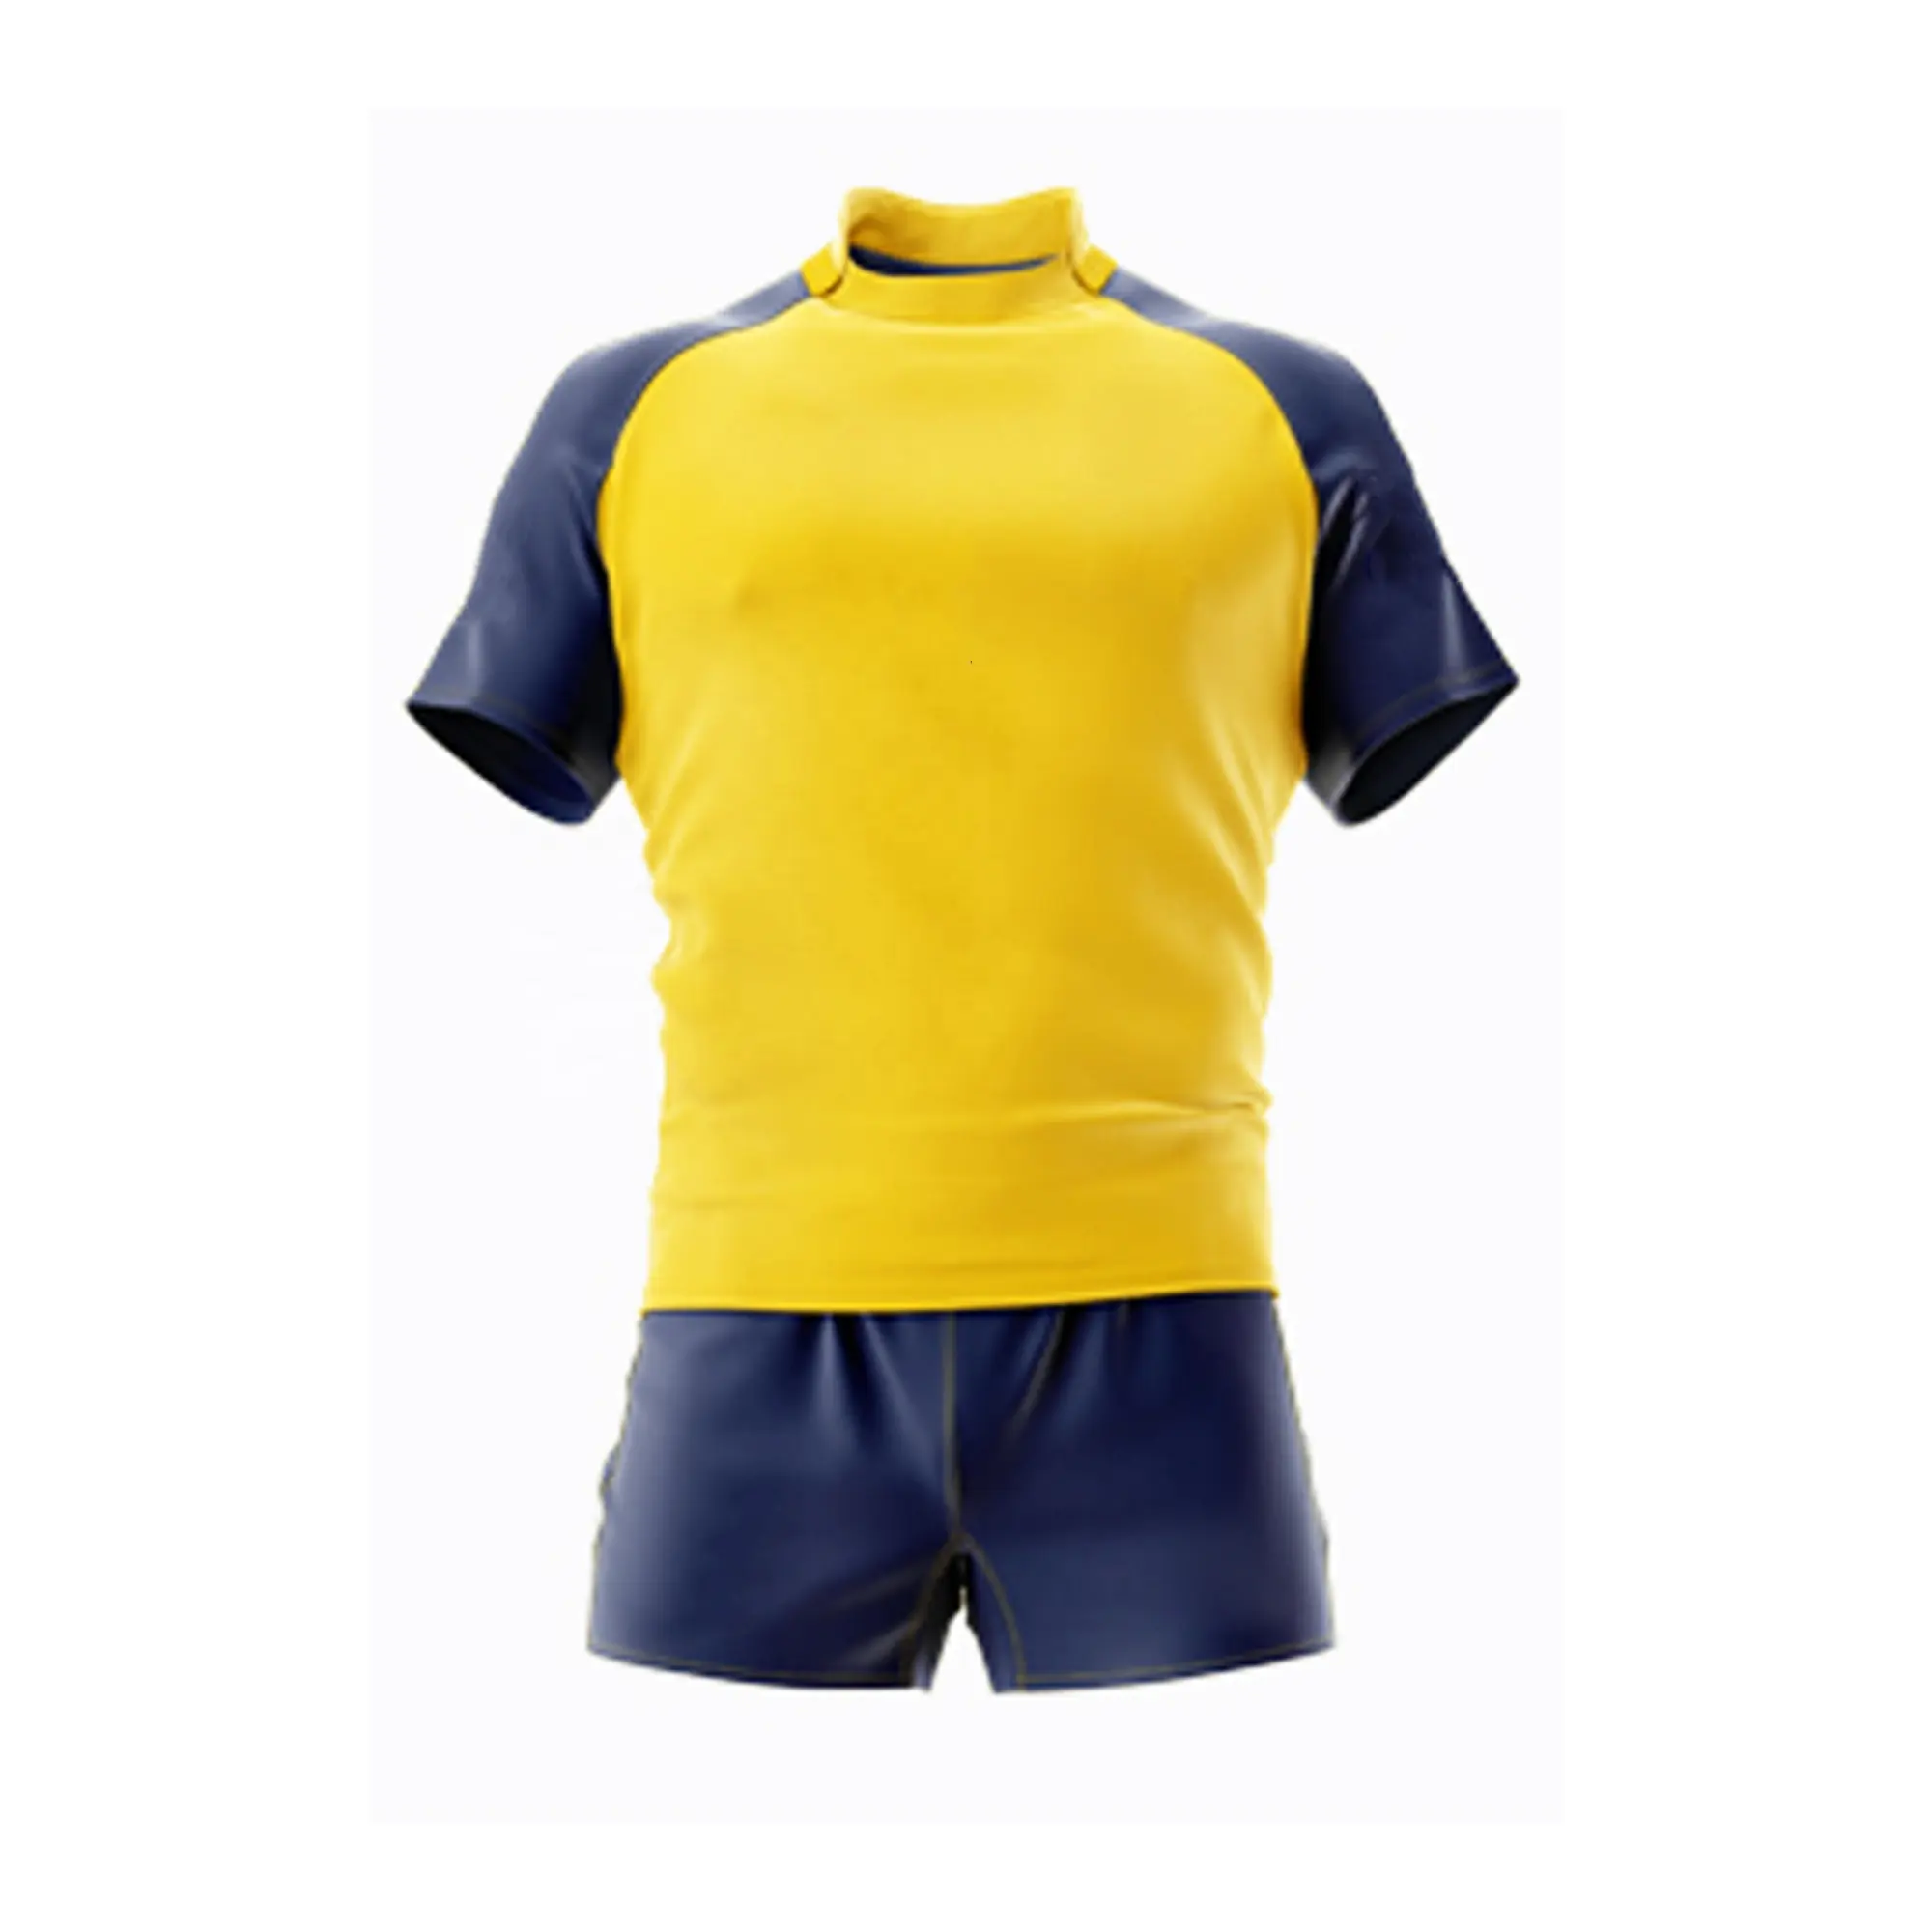 Yeni tasarım özelleştirilmiş Rugby giyim moda erkek spor Rugby forması